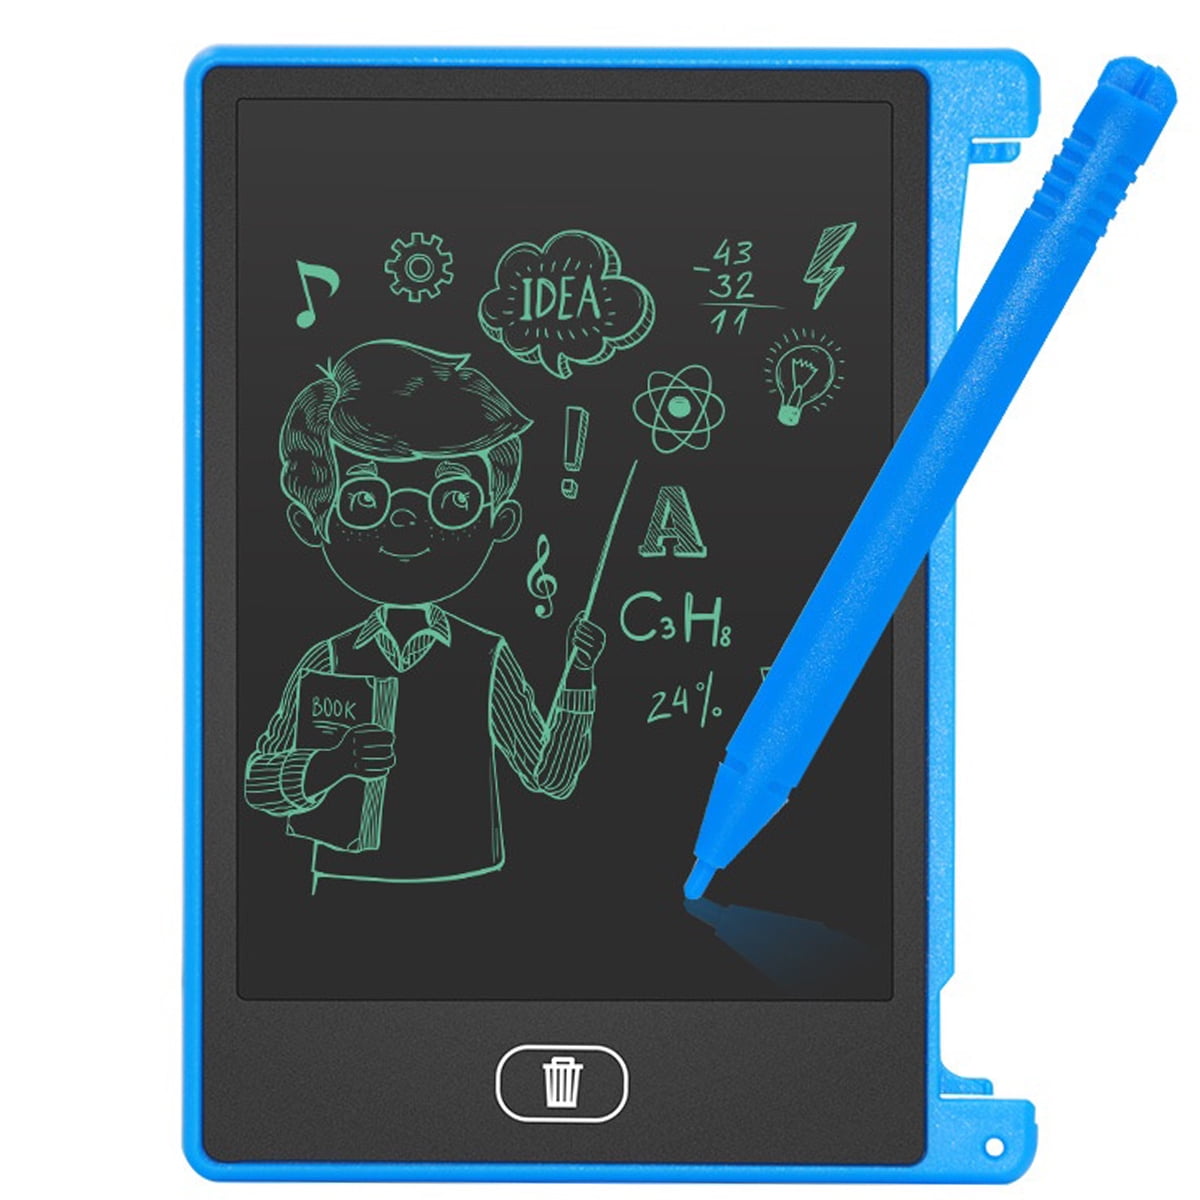 Paddsun Professional Pressure Sensing Graphic Tablet Drawing Pad for Tablet/Laptop/Phone  